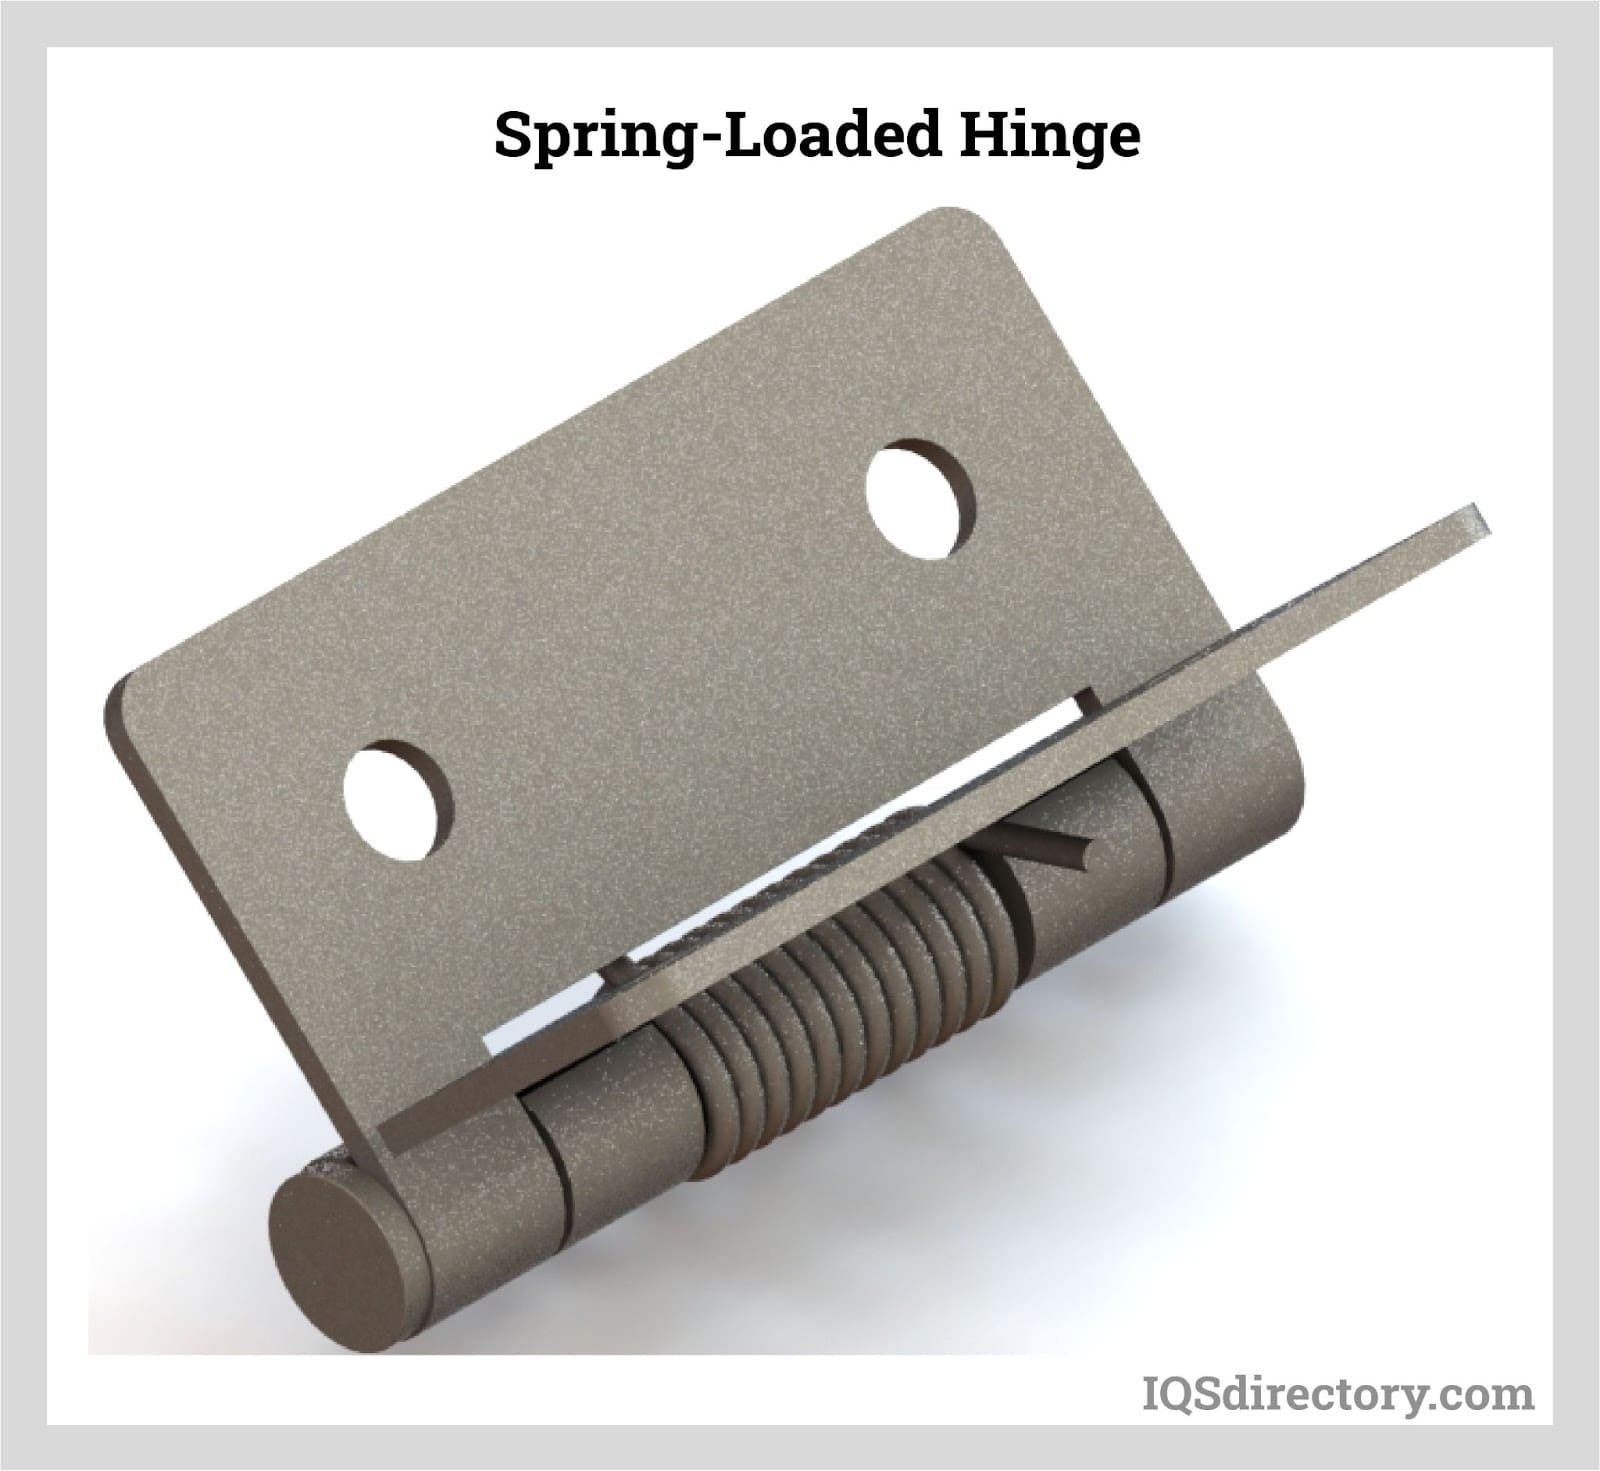 Spring-Loaded Hinge